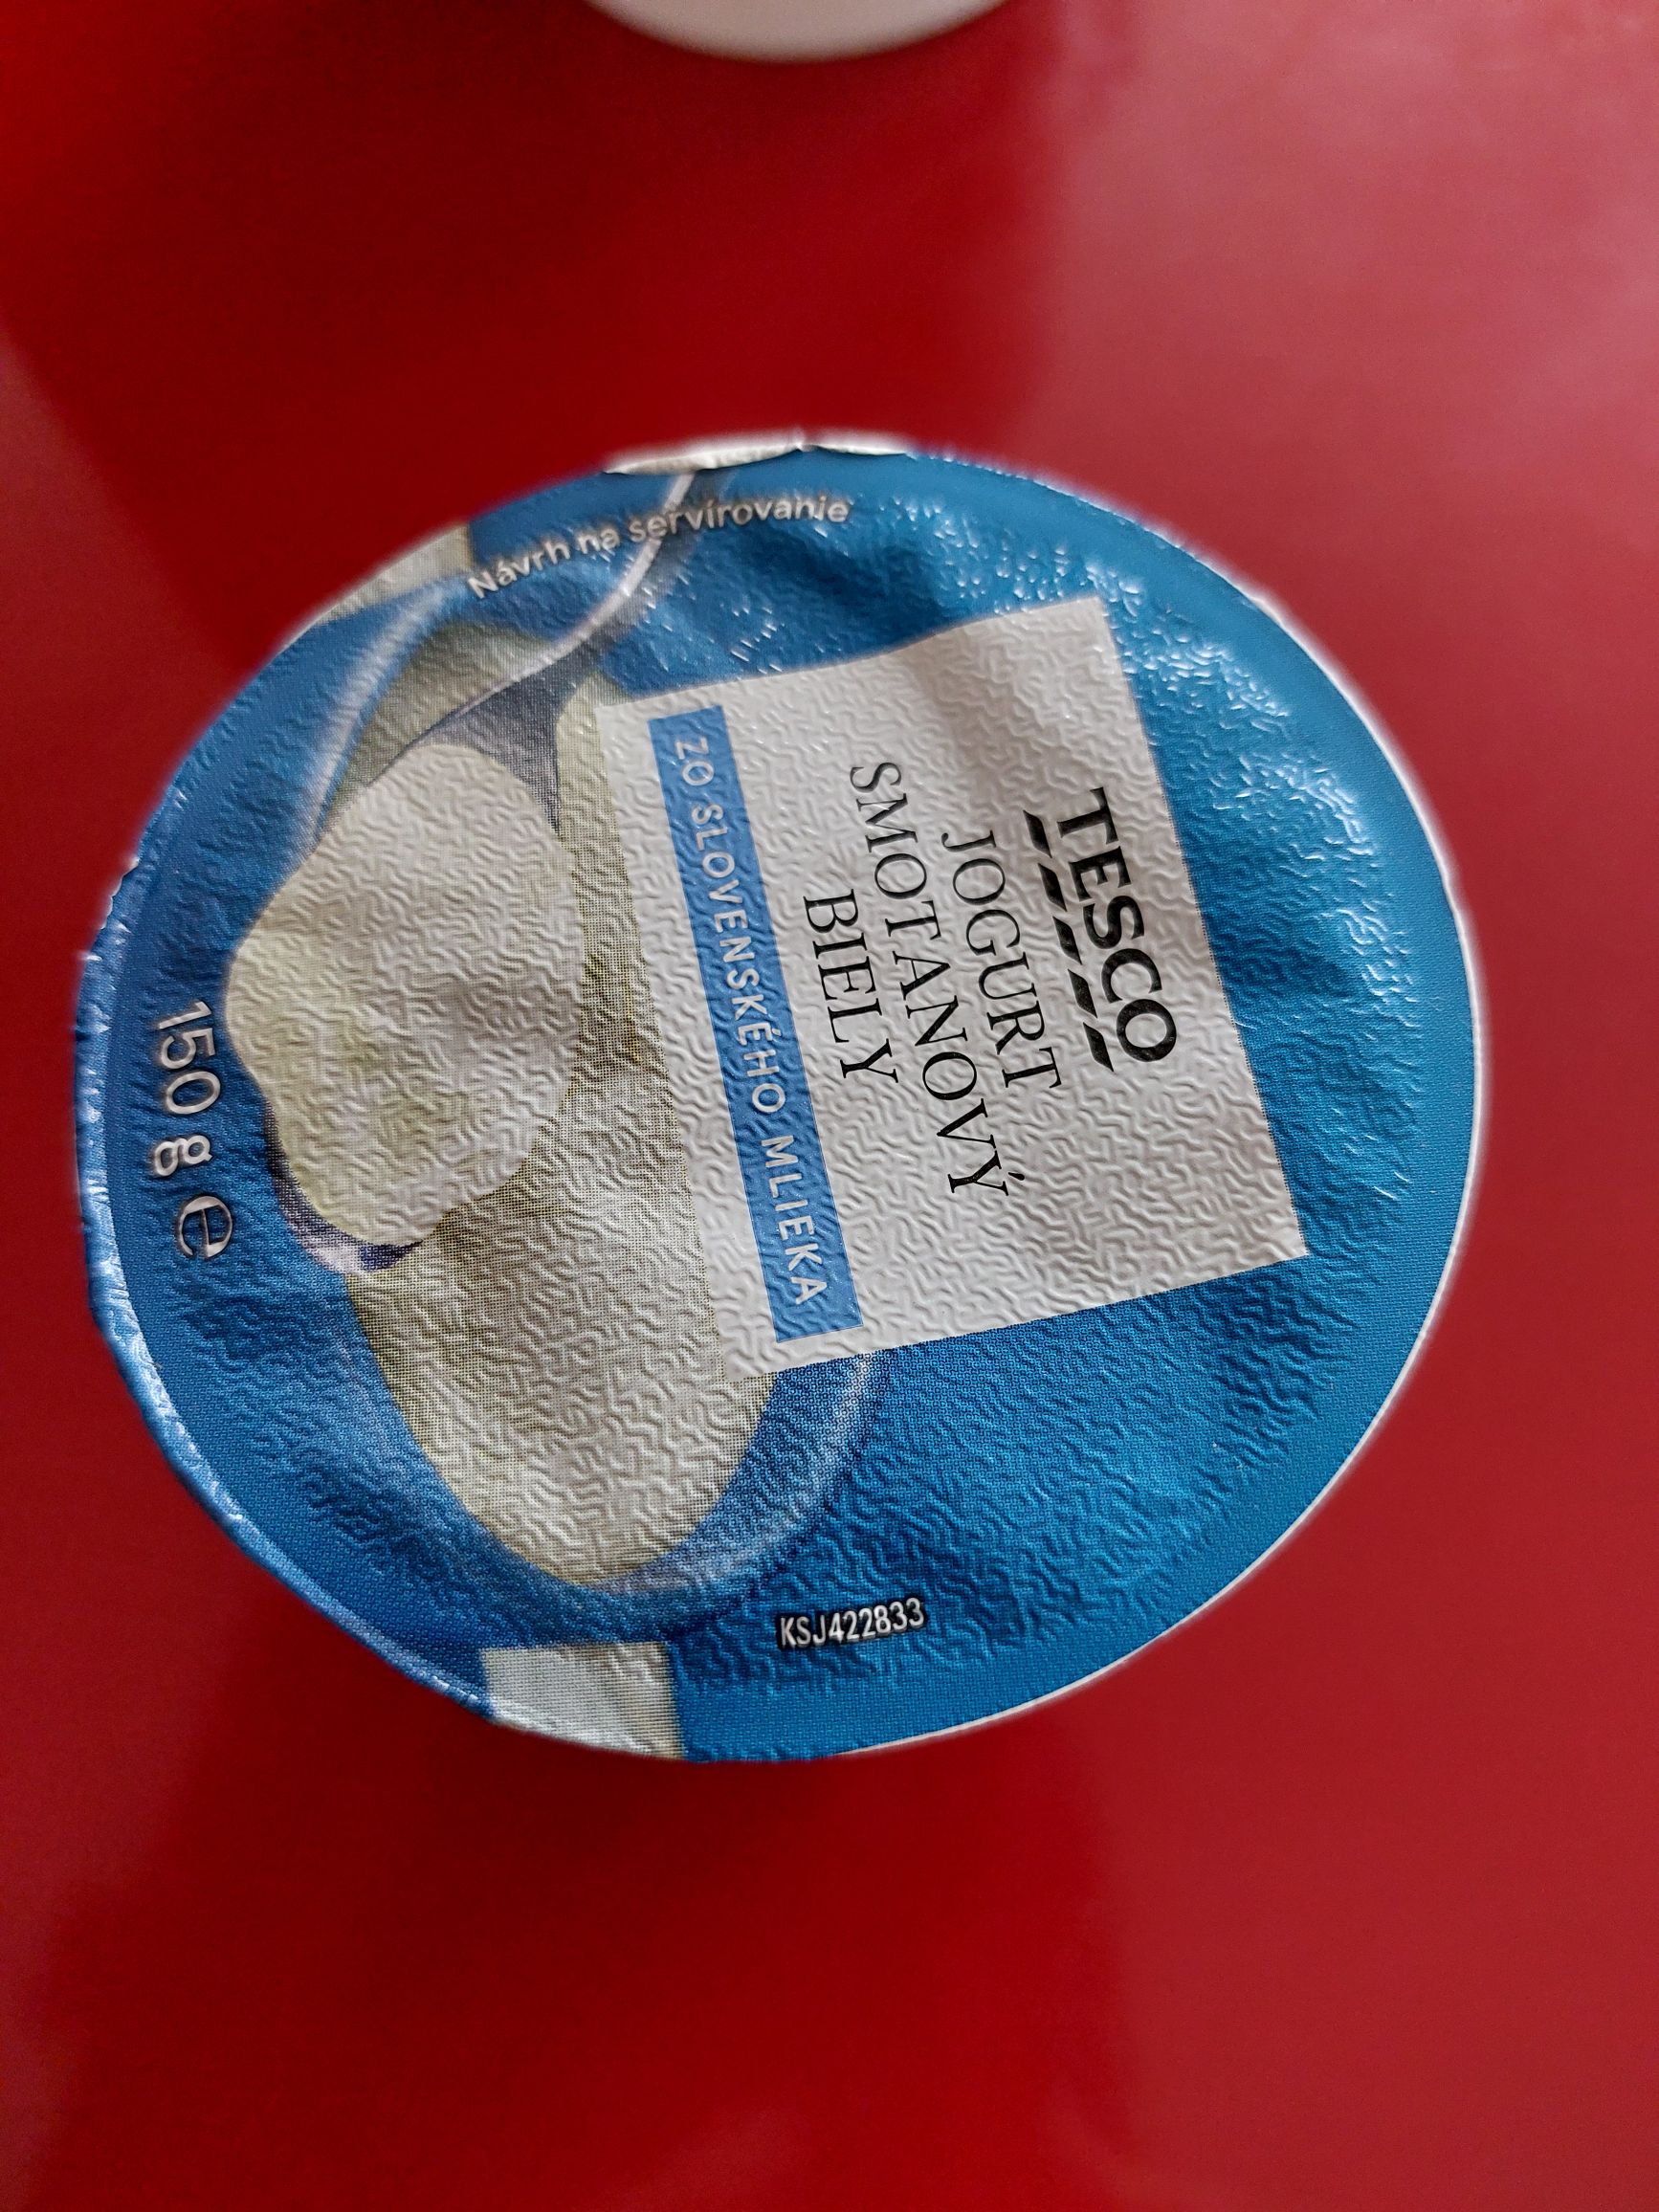 Viečko bieleho jogurtu značky Tesco.